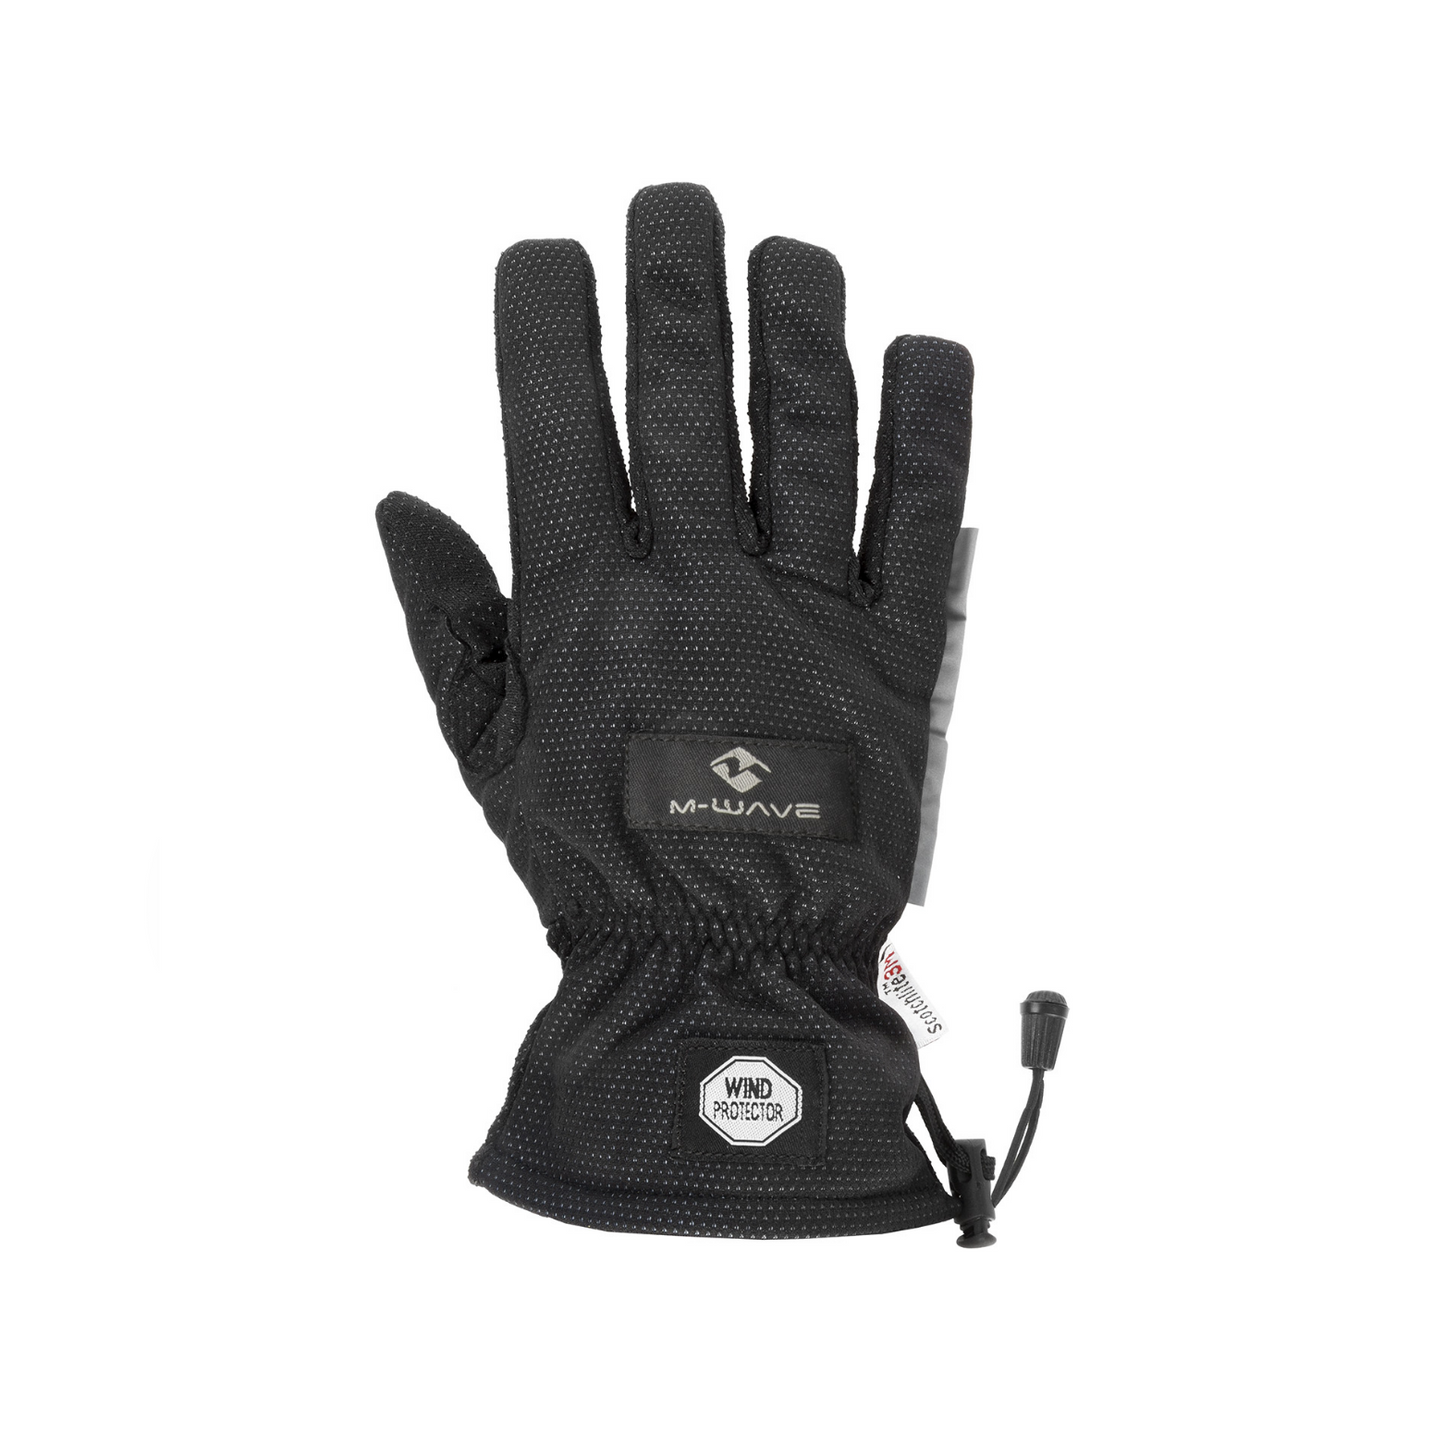 M-Wave Alaska winter handschoenen. waterafstotend, ademend,met reflectie. Maat L XL (hangverpakking)